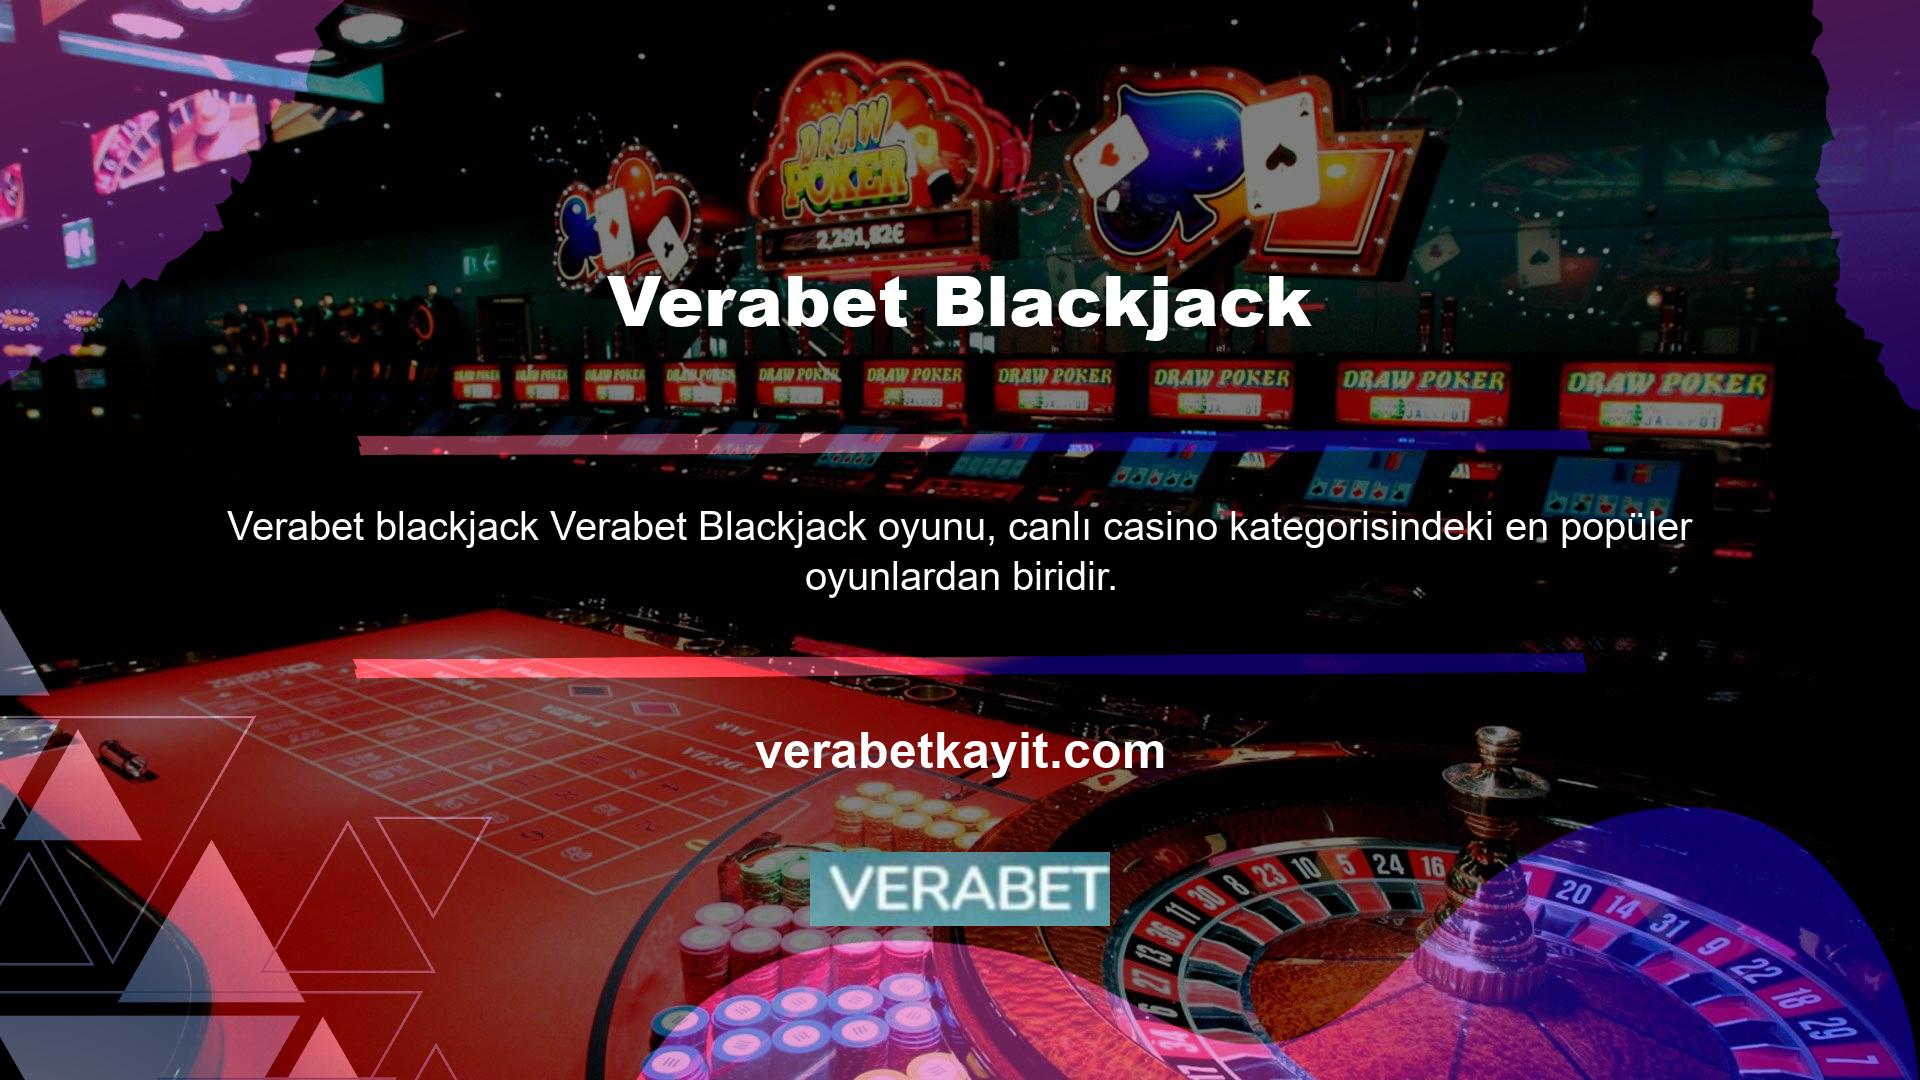 Quick Blackjack, 3D Blackjack ve Lucky Blackjack gibi oyun türleri bulunmaktadır